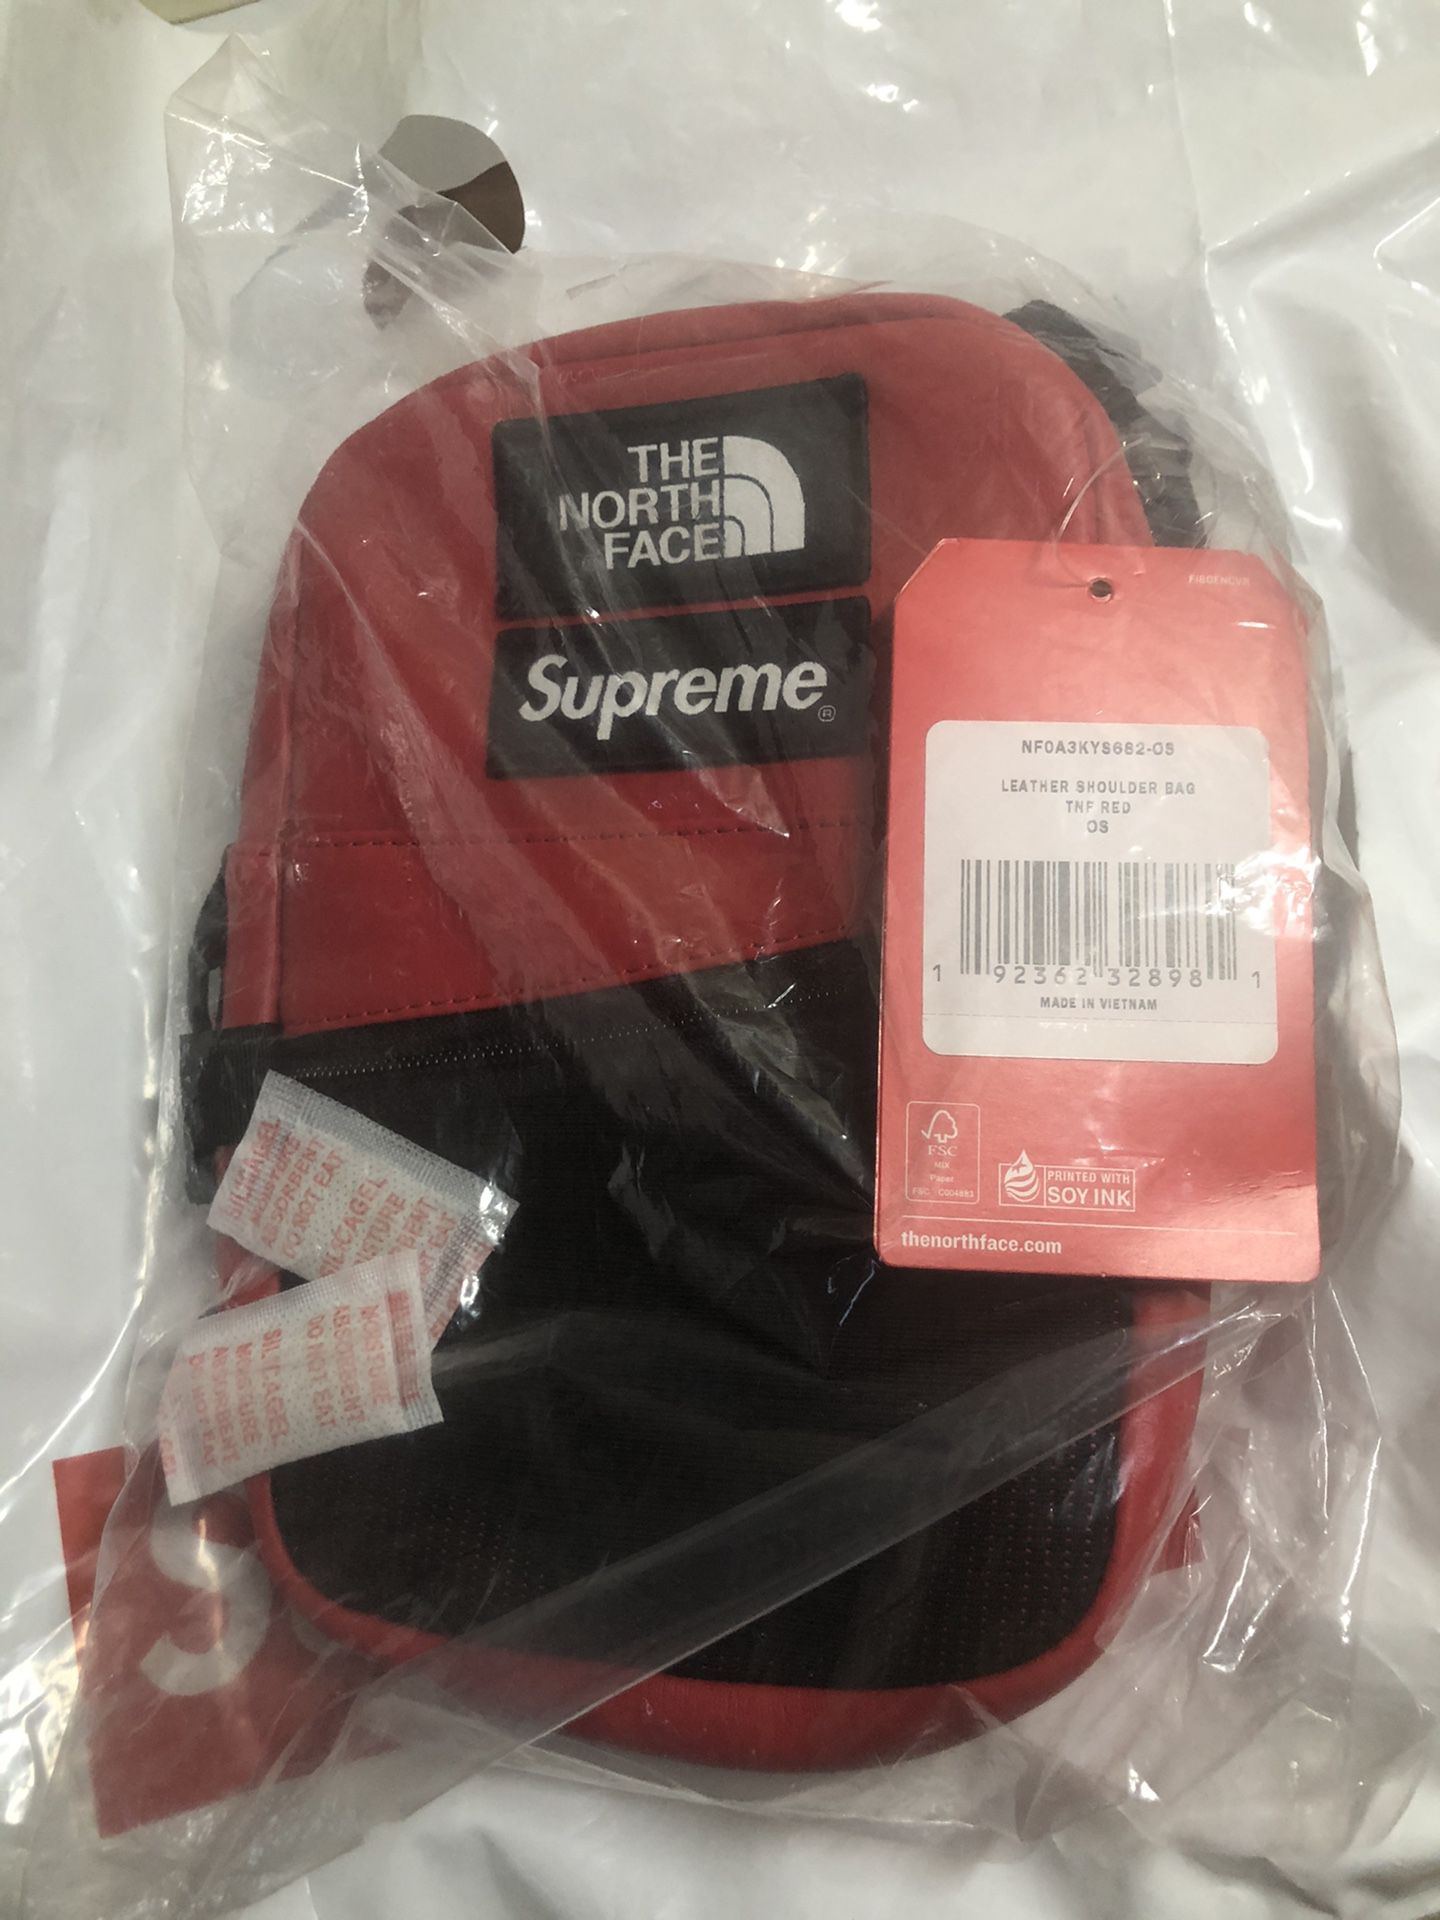 Supreme x The North Face Leather Shoulder Bag